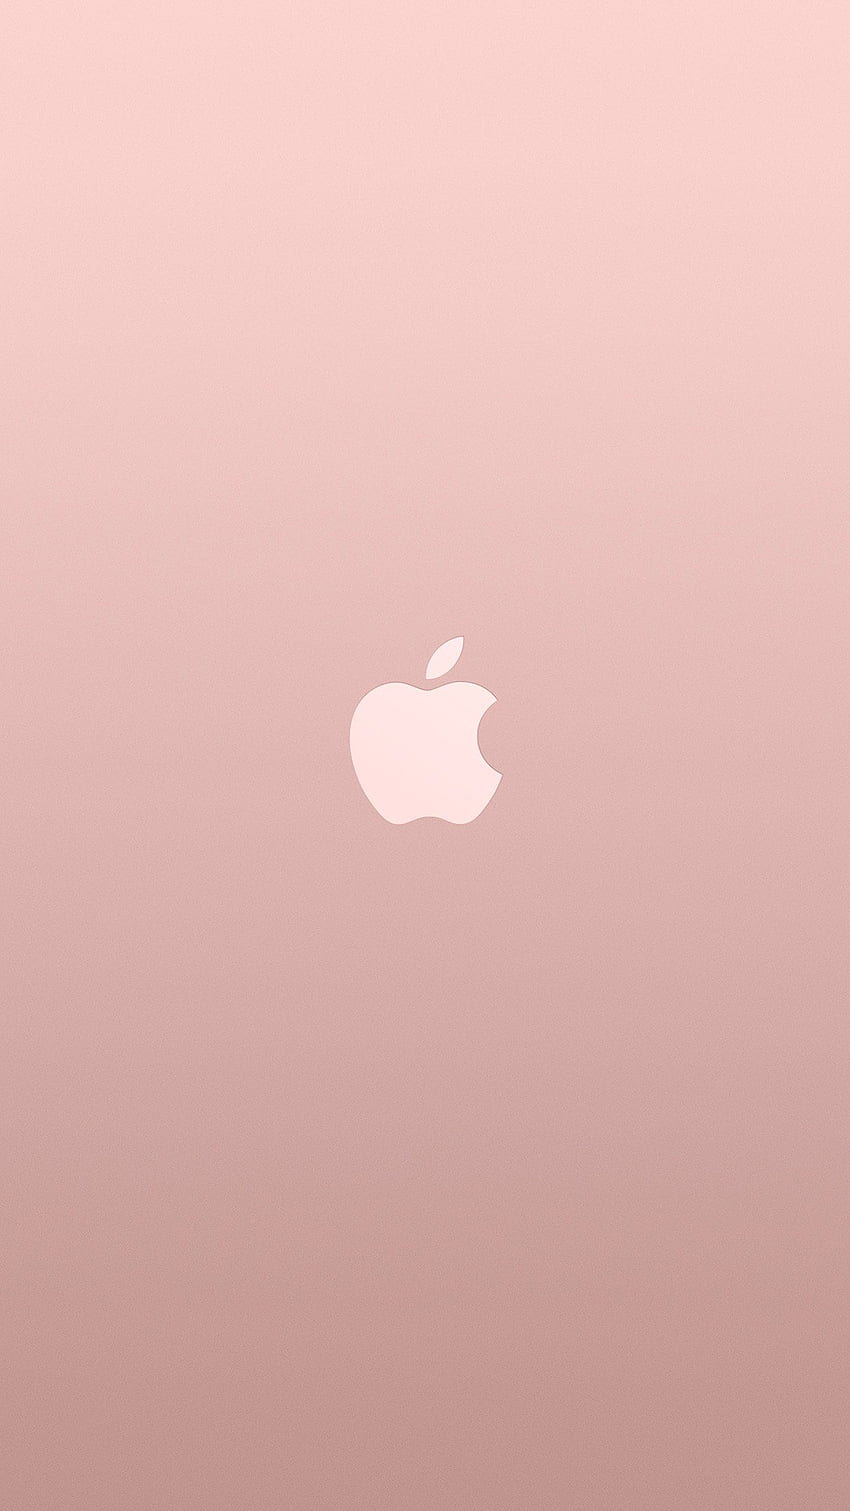 iPhone 6 . logo apple pink rose gold white minimal illustration art HD phone wallpaper